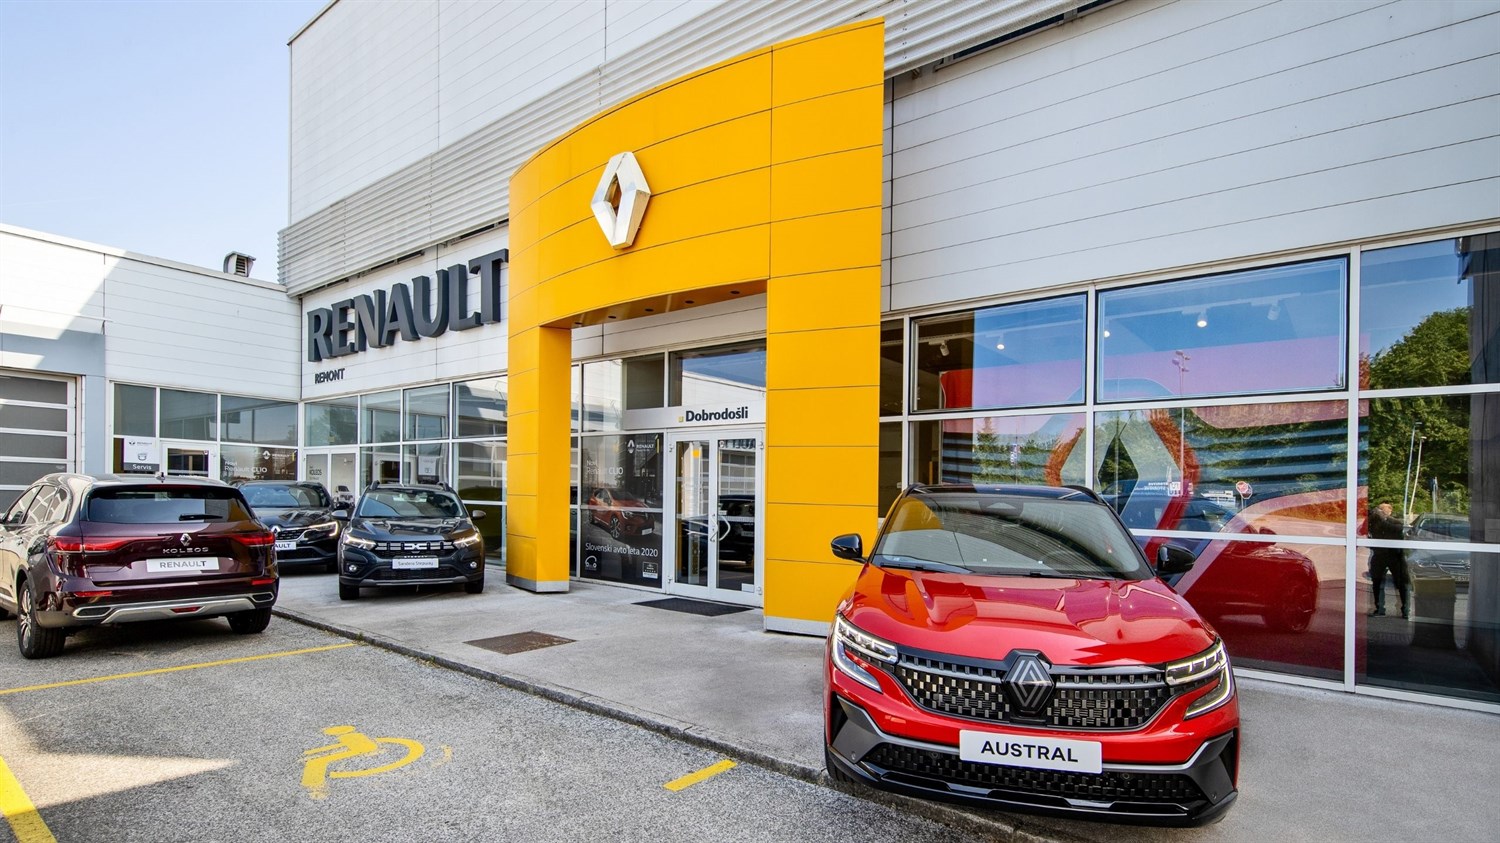 Remont Kranj - prodaja vozil Renault